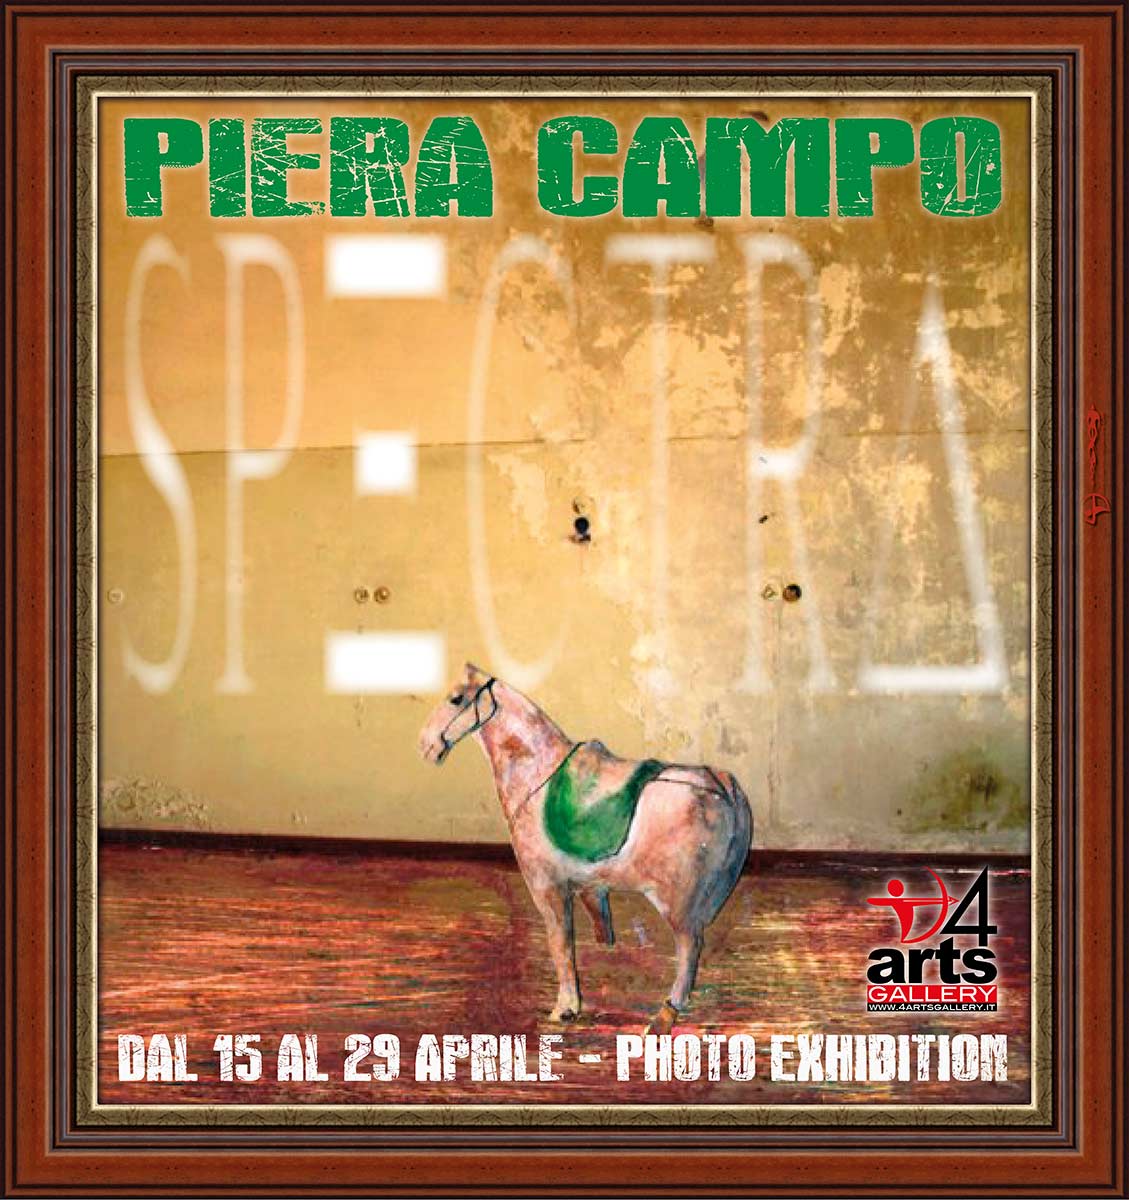 Spectra - Piera Campo, pannello 4ARTS Gallery